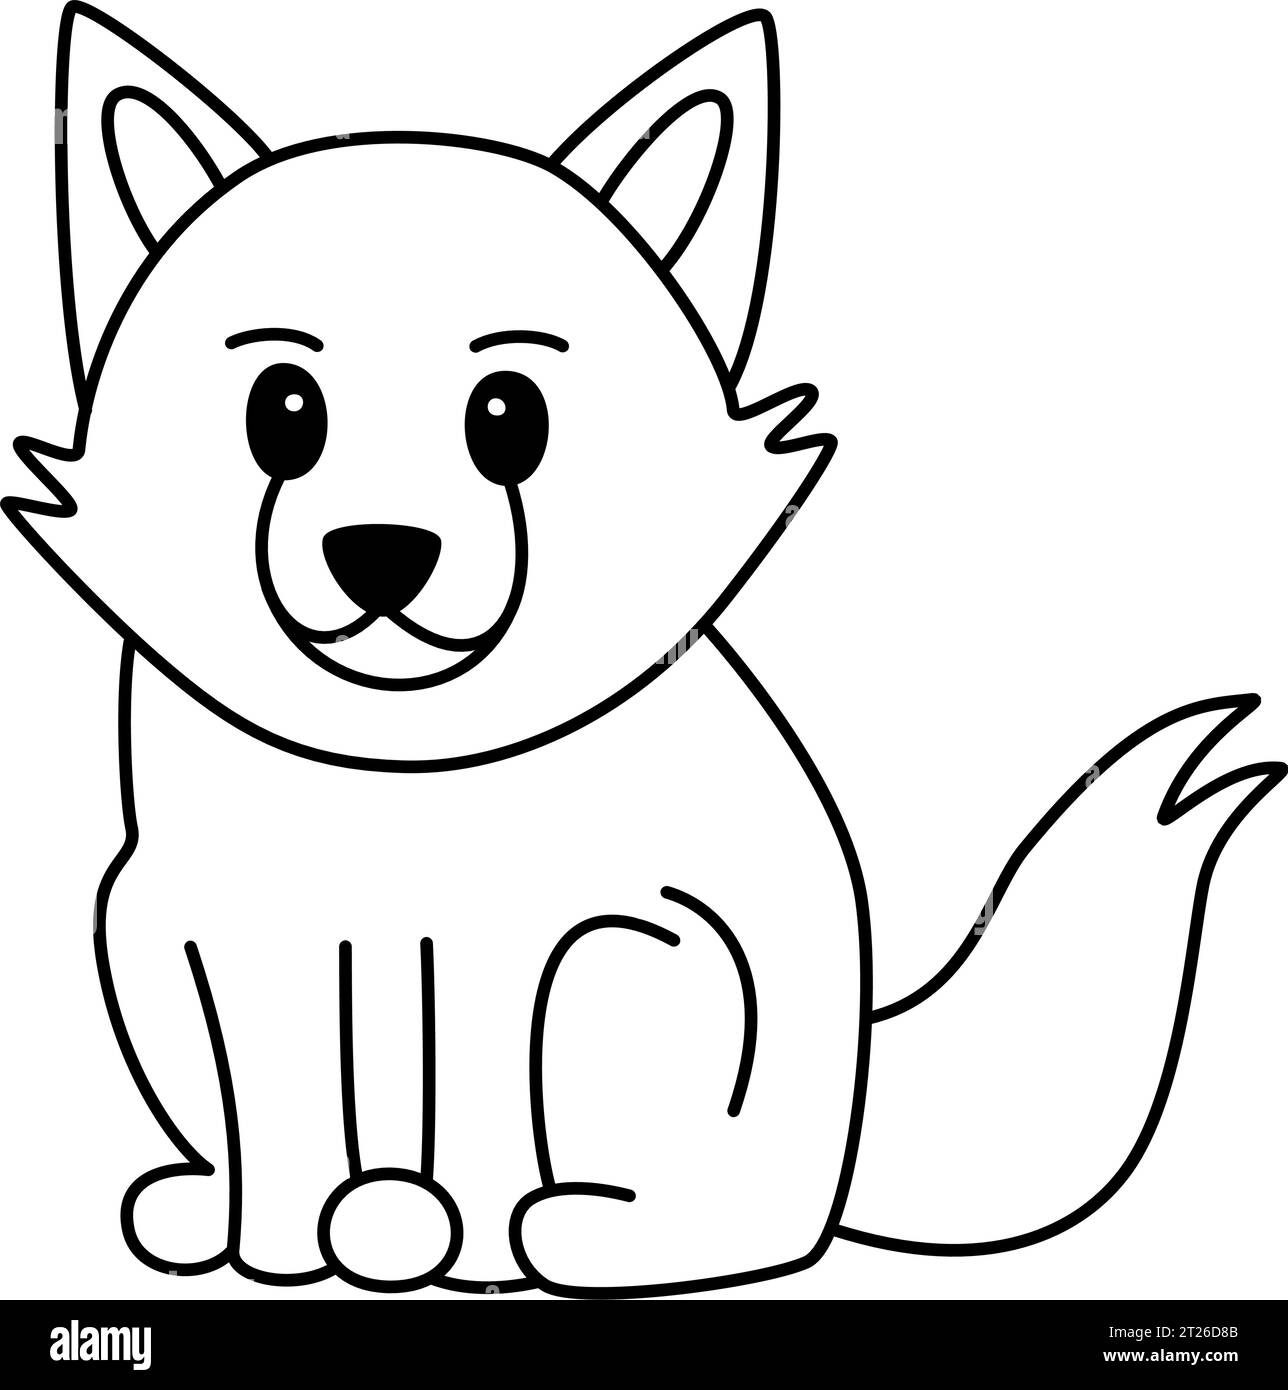 Wolf - changer le projet de créature féroce à un thème animal de zoo doux, mignon, adorable et attachant en utilisant cet élément de dessin animé Illustration de Vecteur